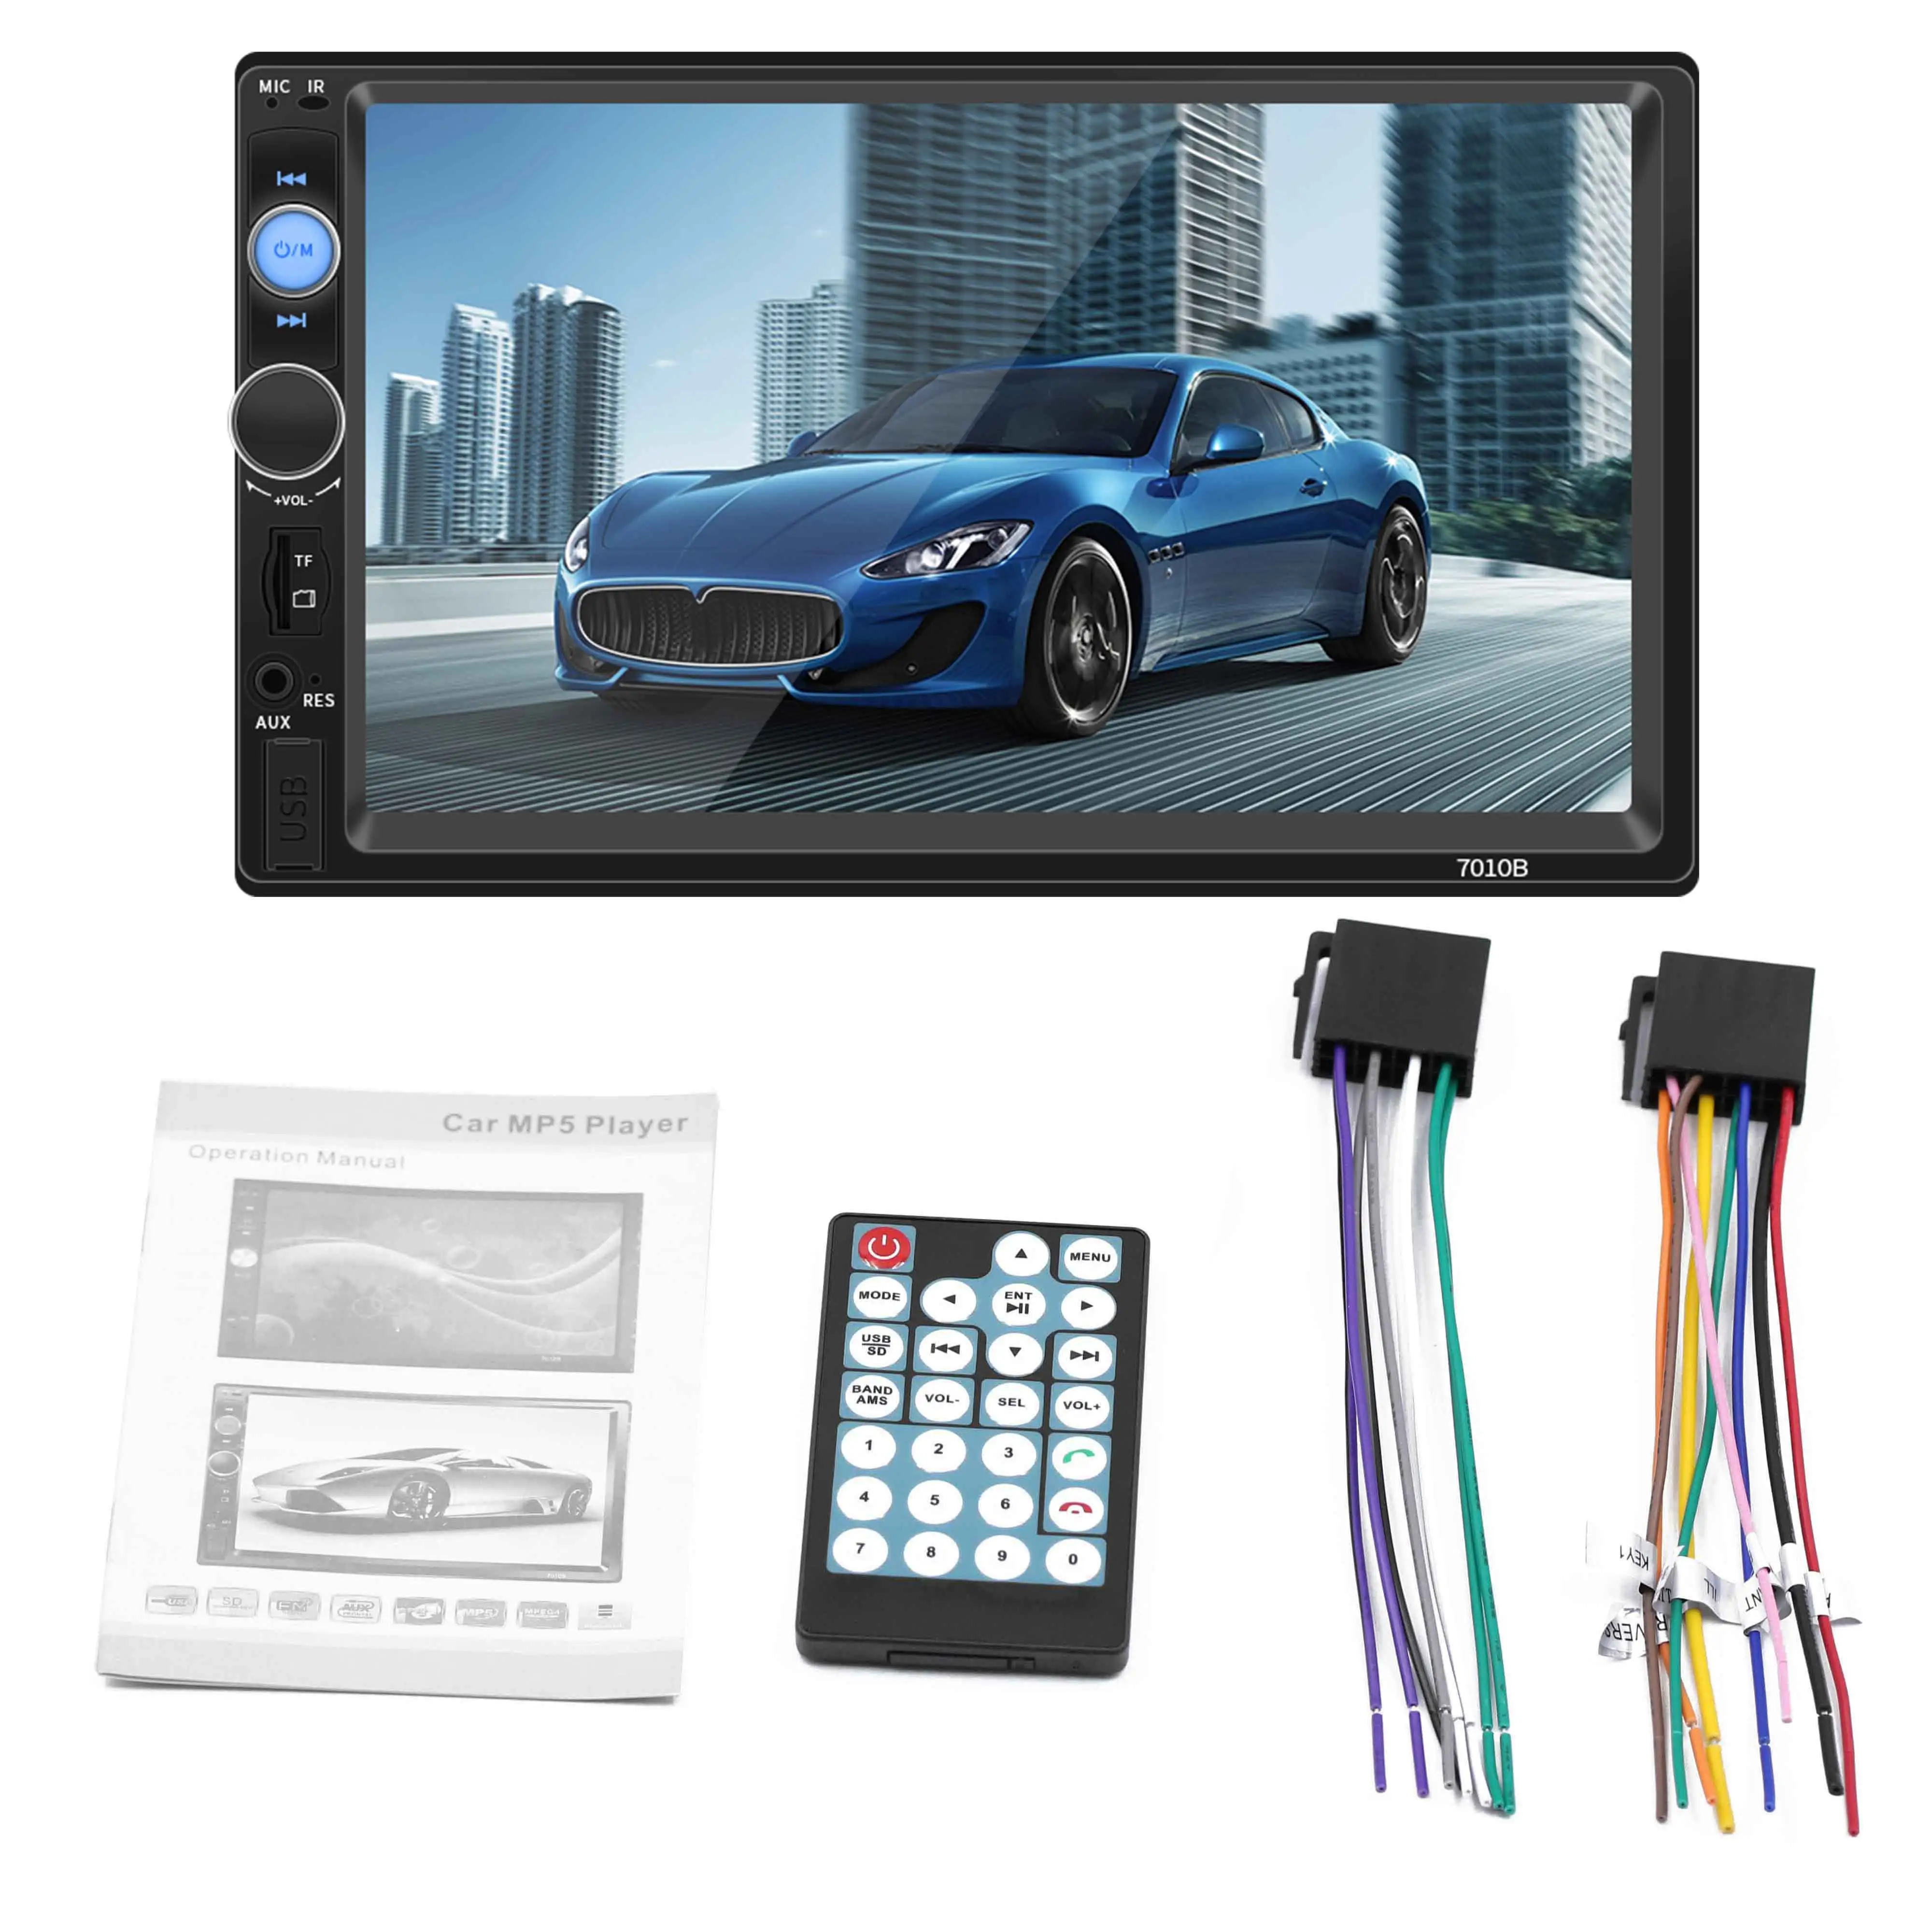 Électronique auto 2 DIN 7 pouces écran tactile autoradio lecteur mp5 écran vidéo de voiture BT mains libres lecteur dvd voiture